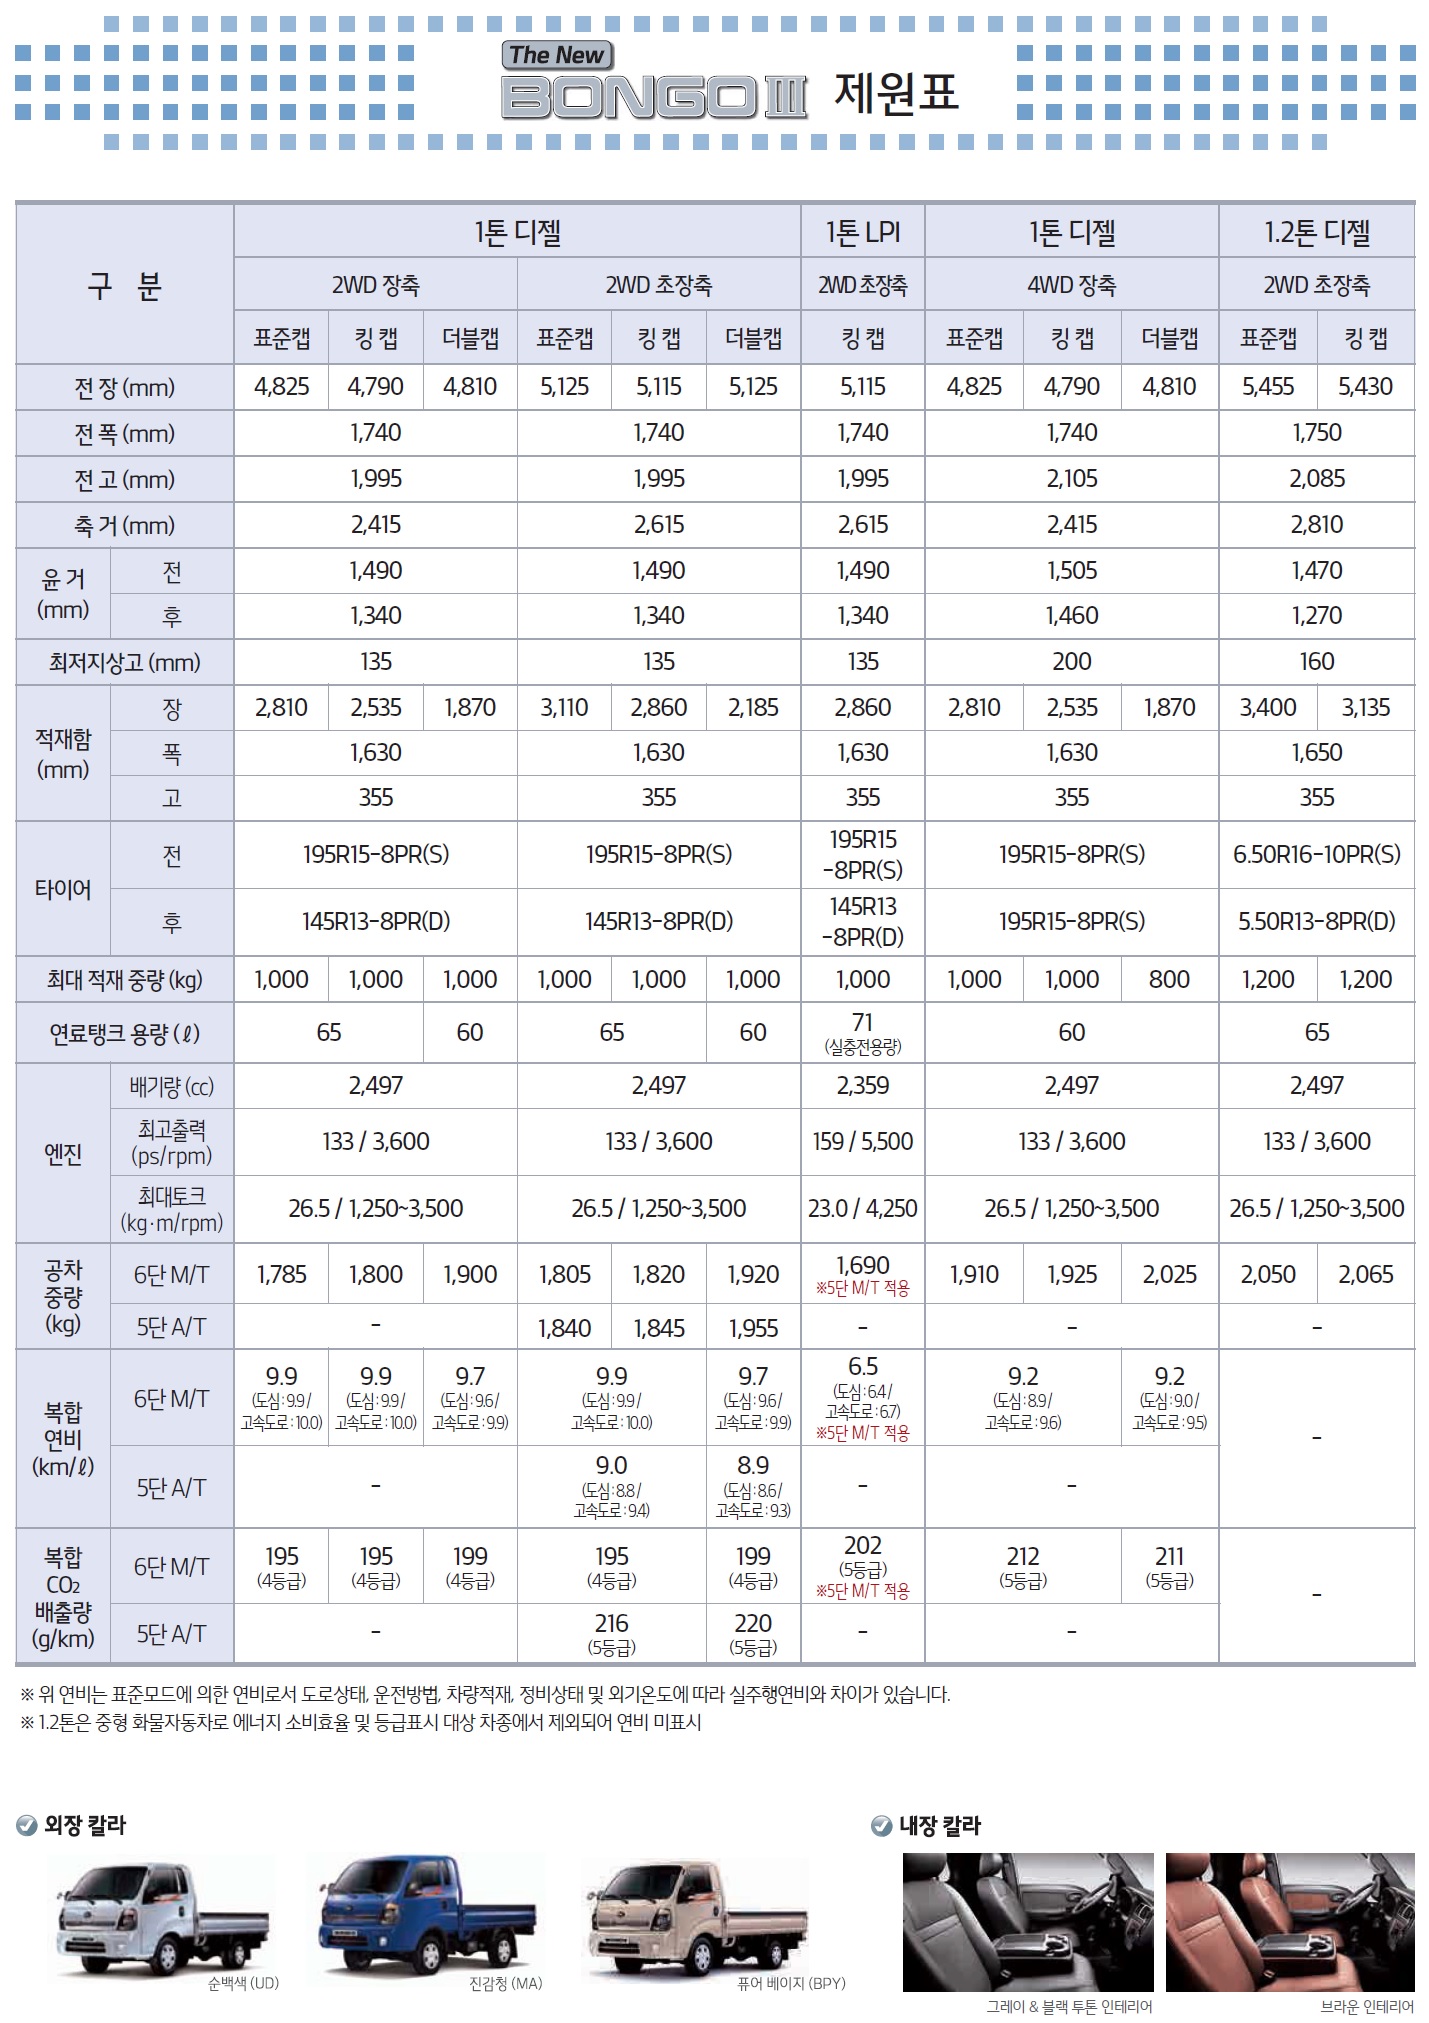 봉고3 가격표 - 2020년 01월 -20.jpg